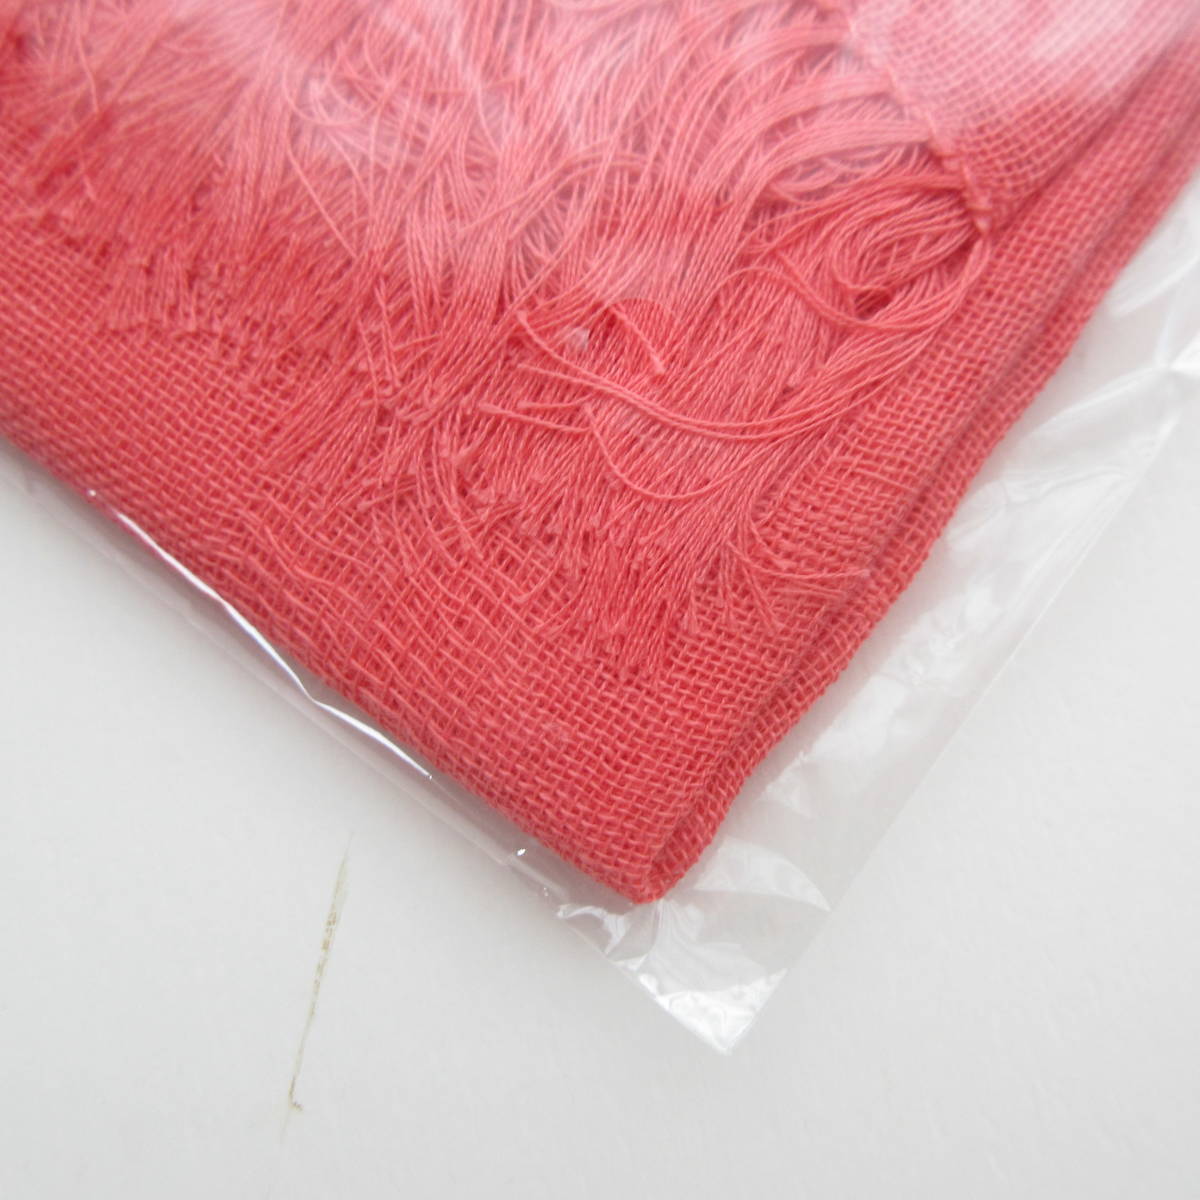 新品 内野 UCHINO 軽量糸 ガーゼ マフラー ストール 綿100% 薄手のガーゼ織り 抗菌防臭加工 UV対策 軽く柔らかな肌触り_画像2